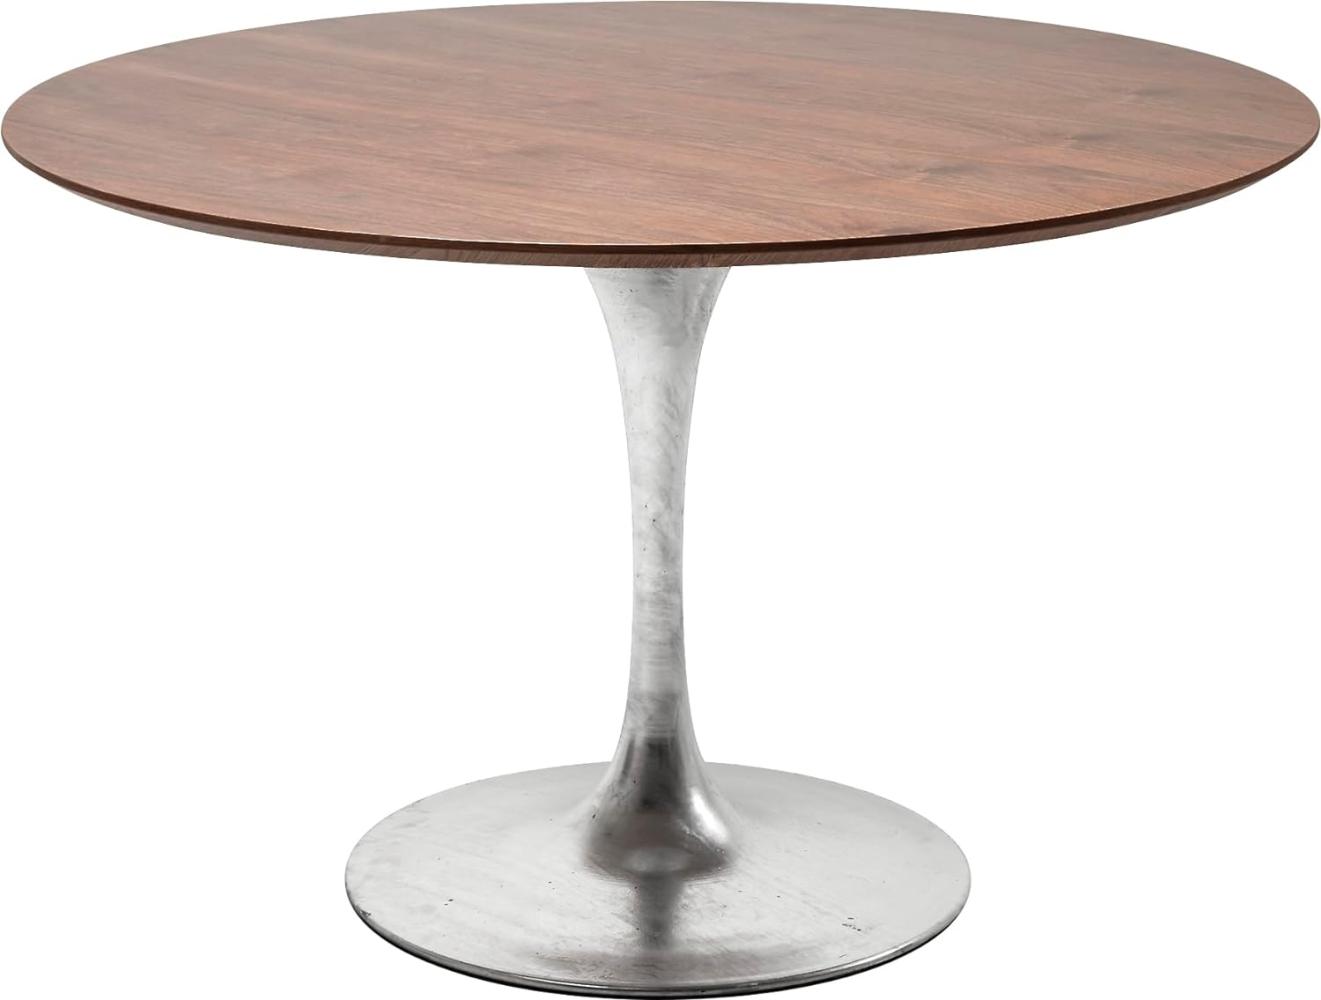 Kare Design Tisch Inovation, Silber/Braun, Esstisch, Wohnzimmertisch, Stahlfuß, Rund, 120cm Durchmesser Bild 1